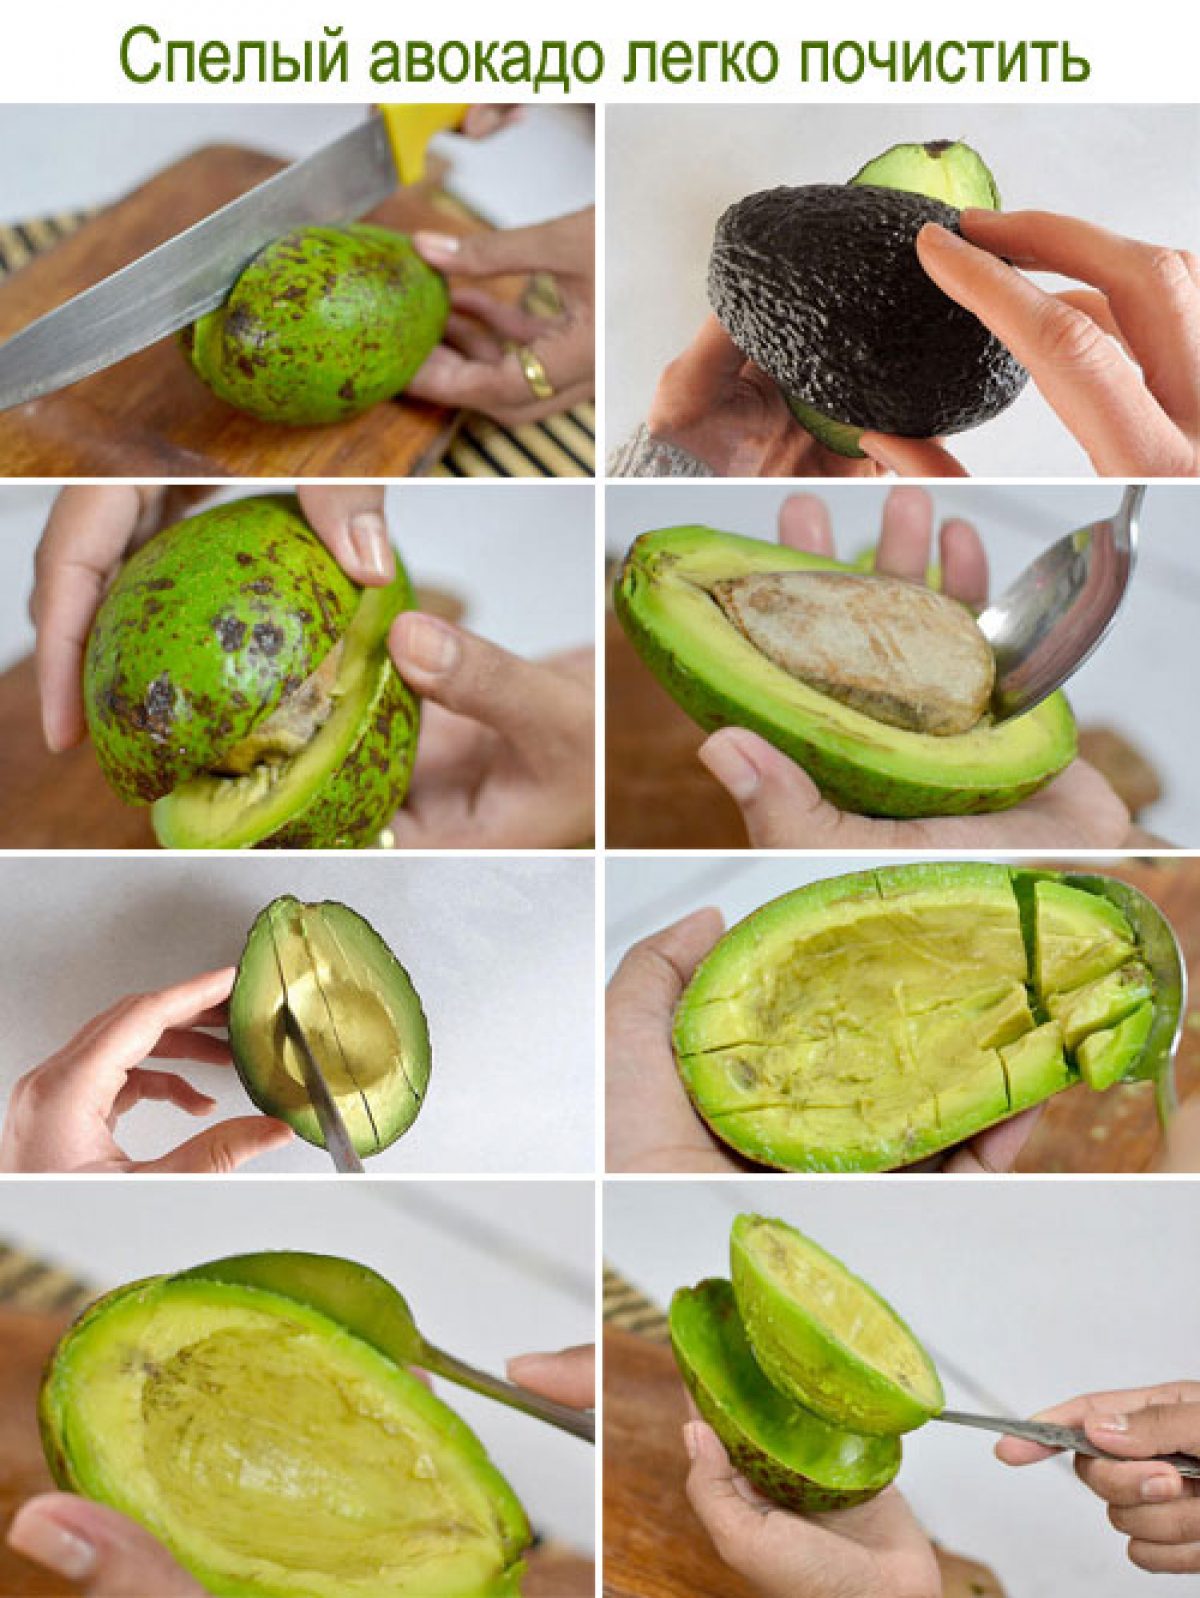 Как созреть авокадо в домашних условиях быстро. Как чистить авокадо. Как почистить авокадо. Как кушать авокадо. Как кушать авокадо правильно.